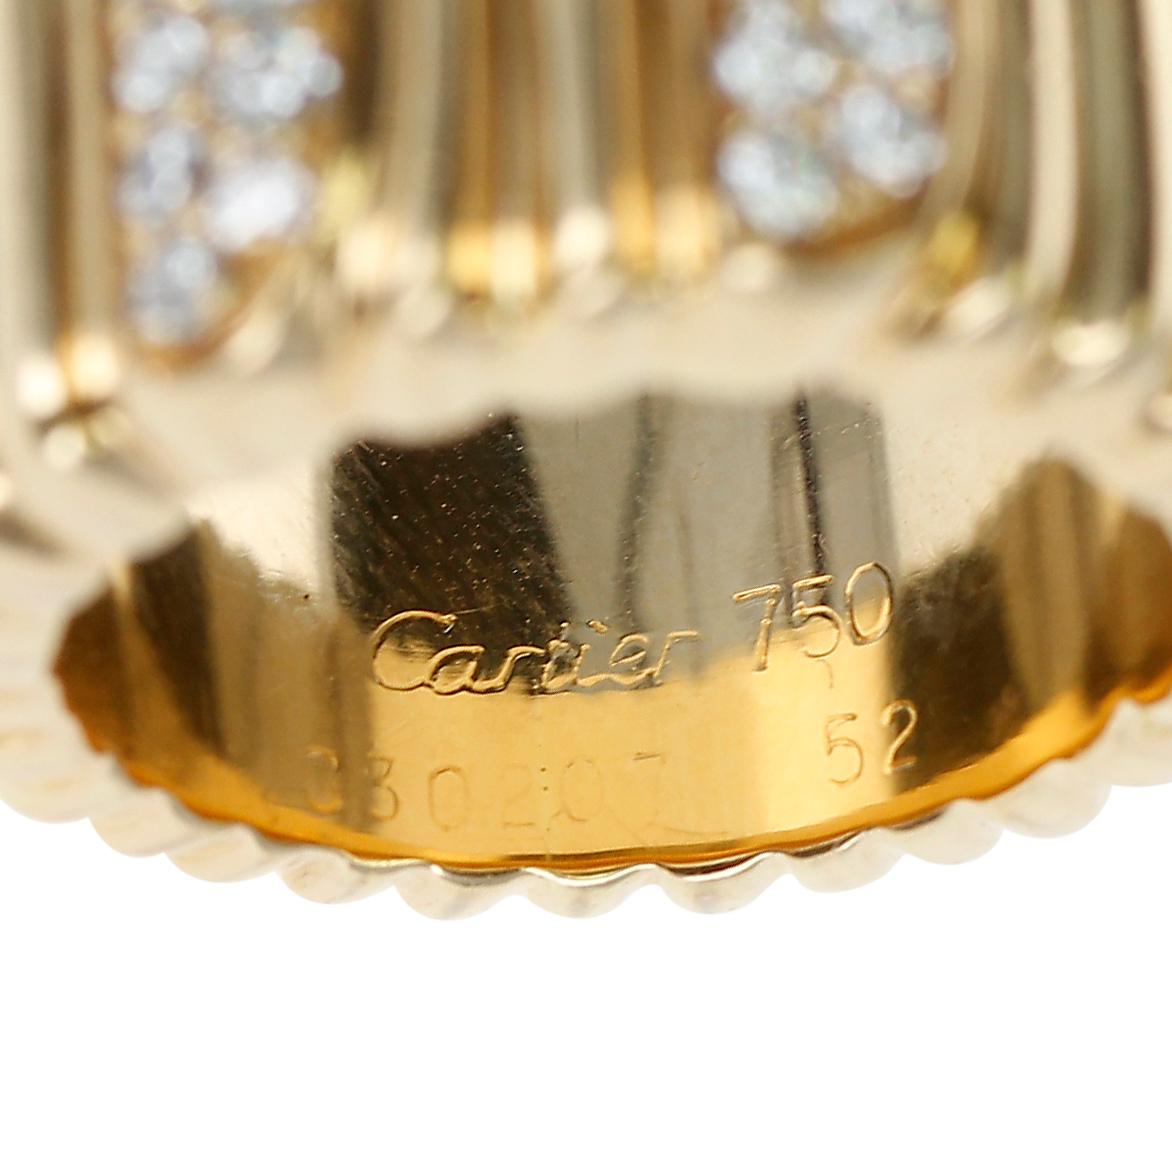 Ein Cartier Strukturierte 18 Karat Gelbgold und Diamant Band Ring. Das Gesamtgewicht beträgt 15,65 Gramm. Die Ringgröße ist US 6. Gestempelt Cartier, 750 und Seriennummer. 

SKU: 219-RCECJ

 
